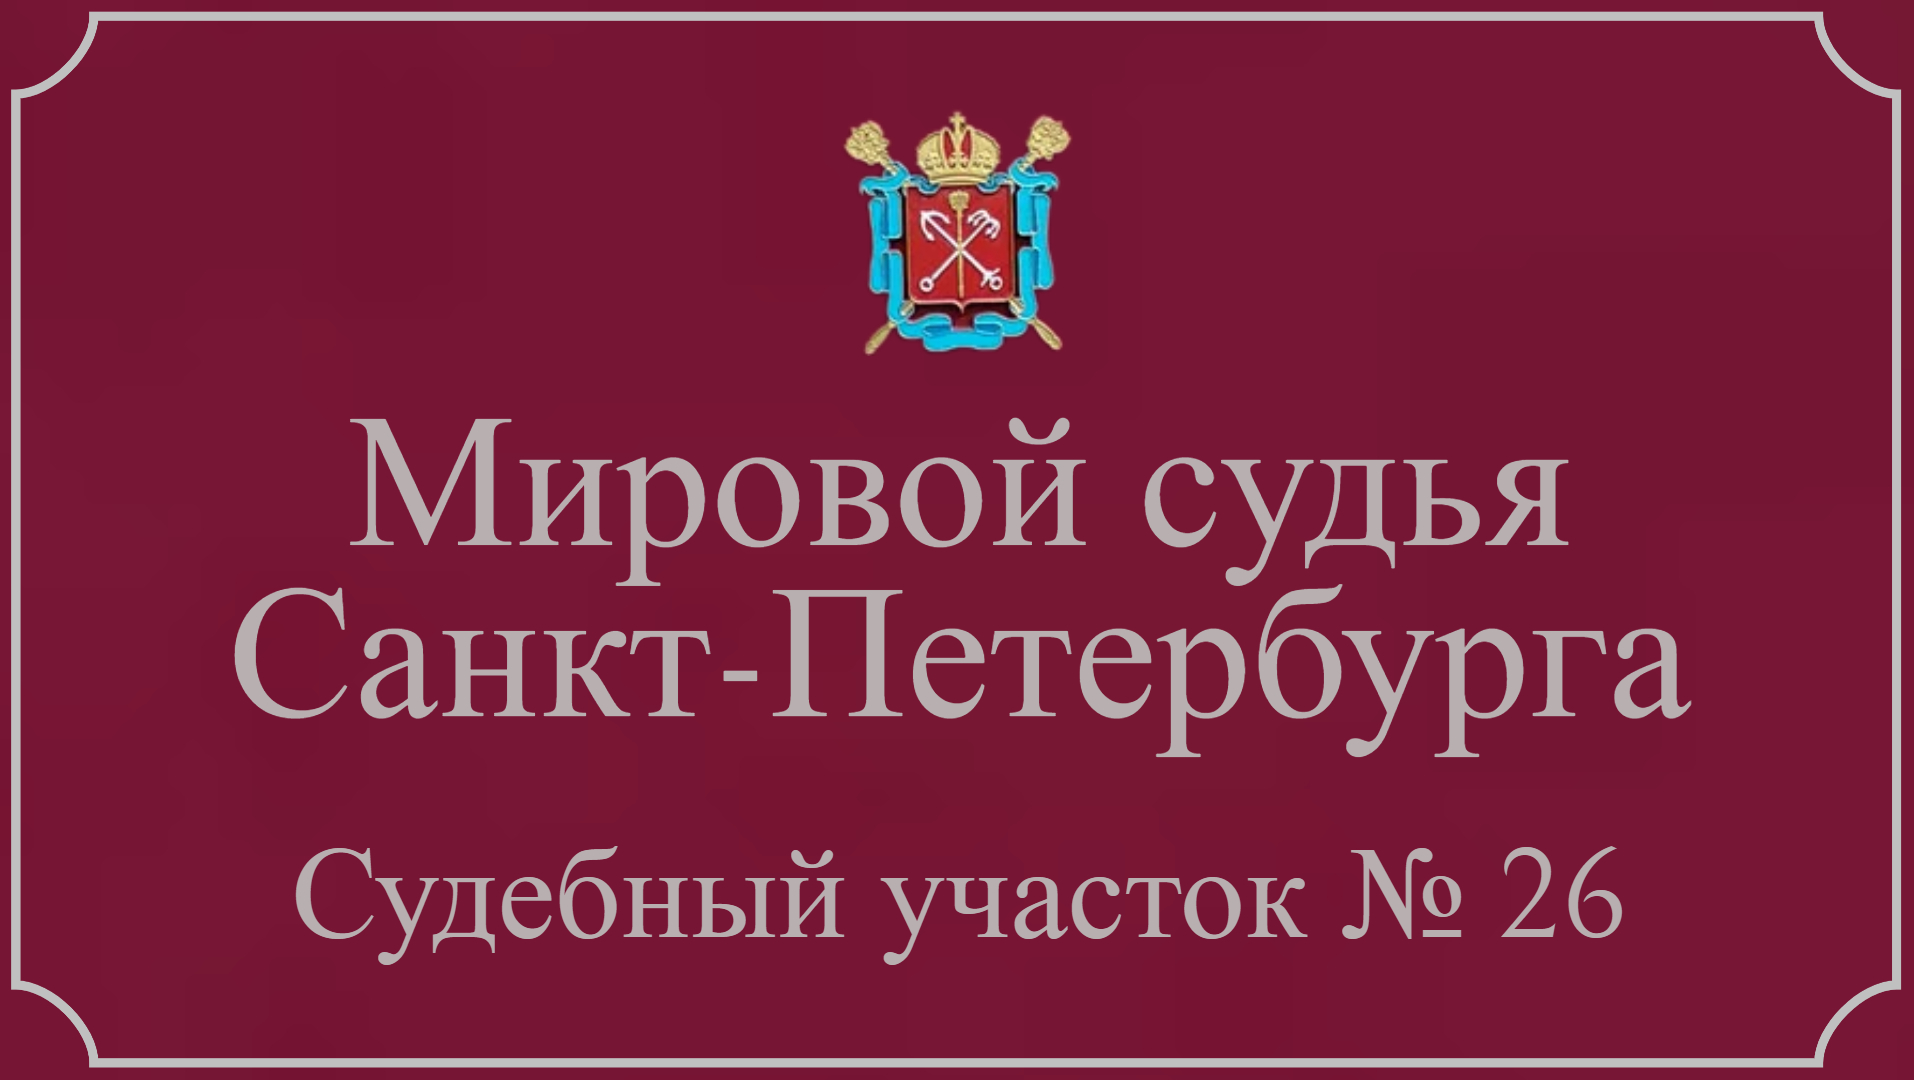 Информация по 26 судебному участку в Санкт-Петербурге.